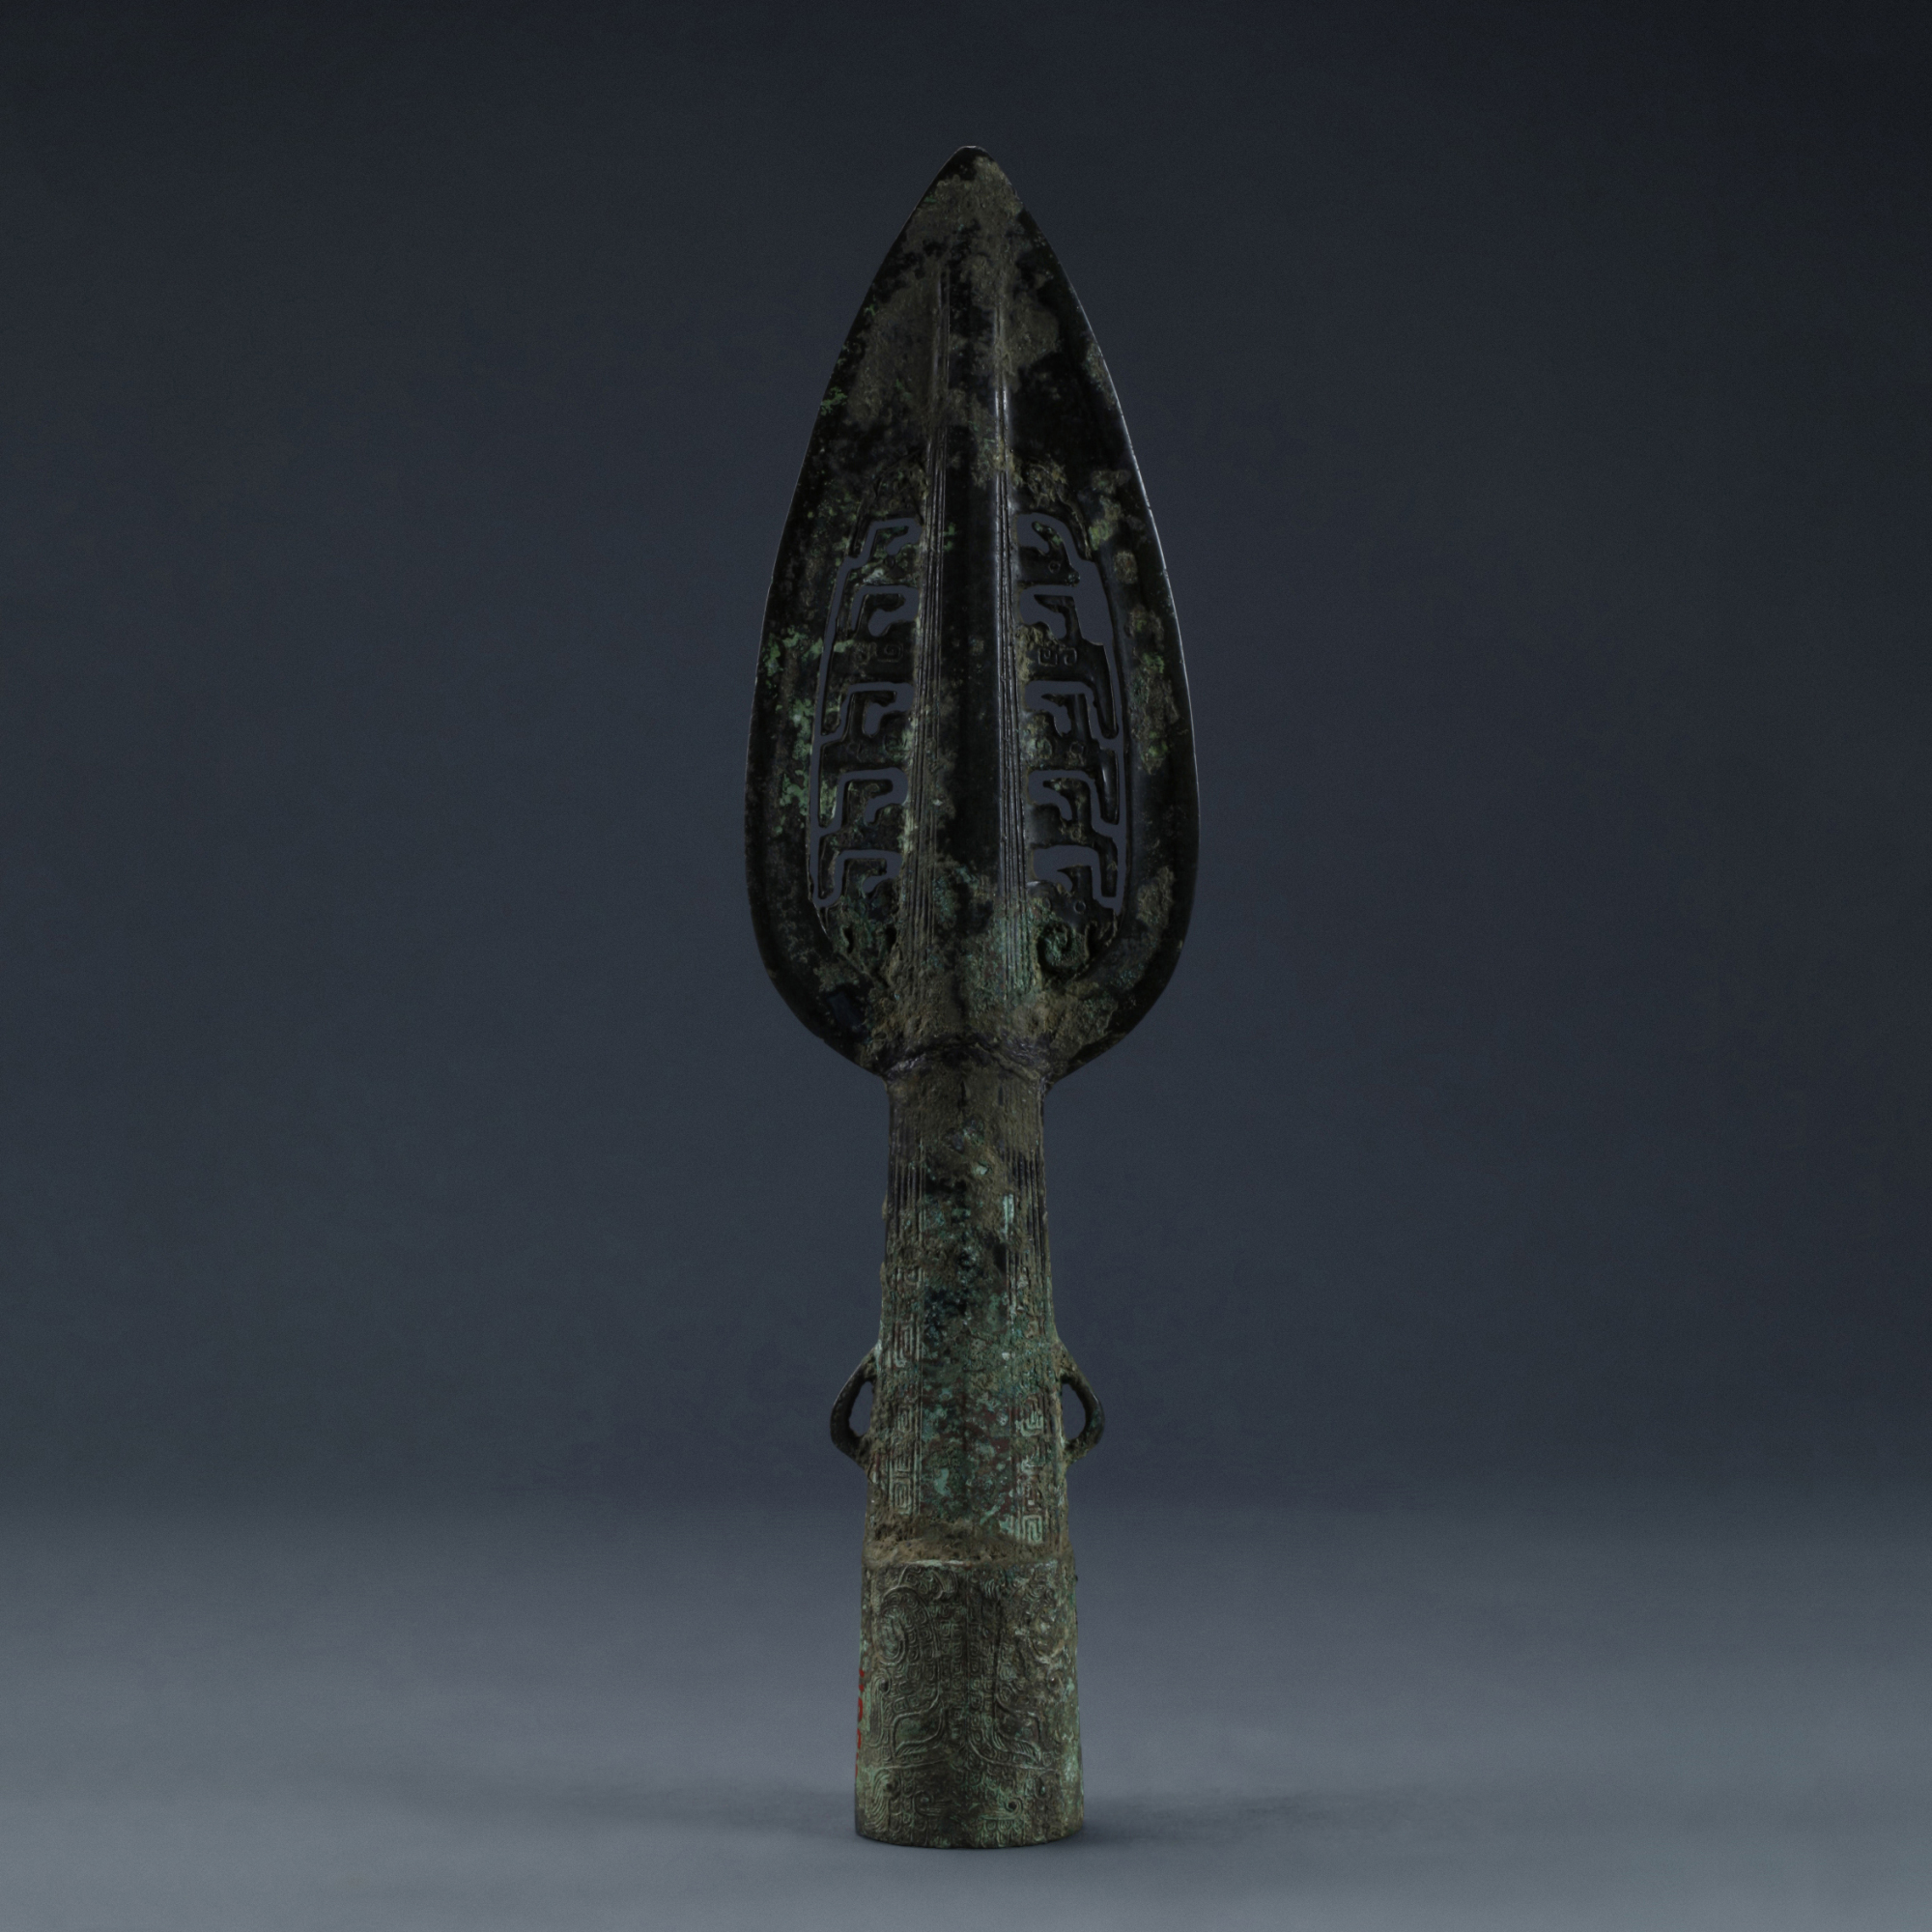 深圳博物馆,珍藏的古代青铜武器!